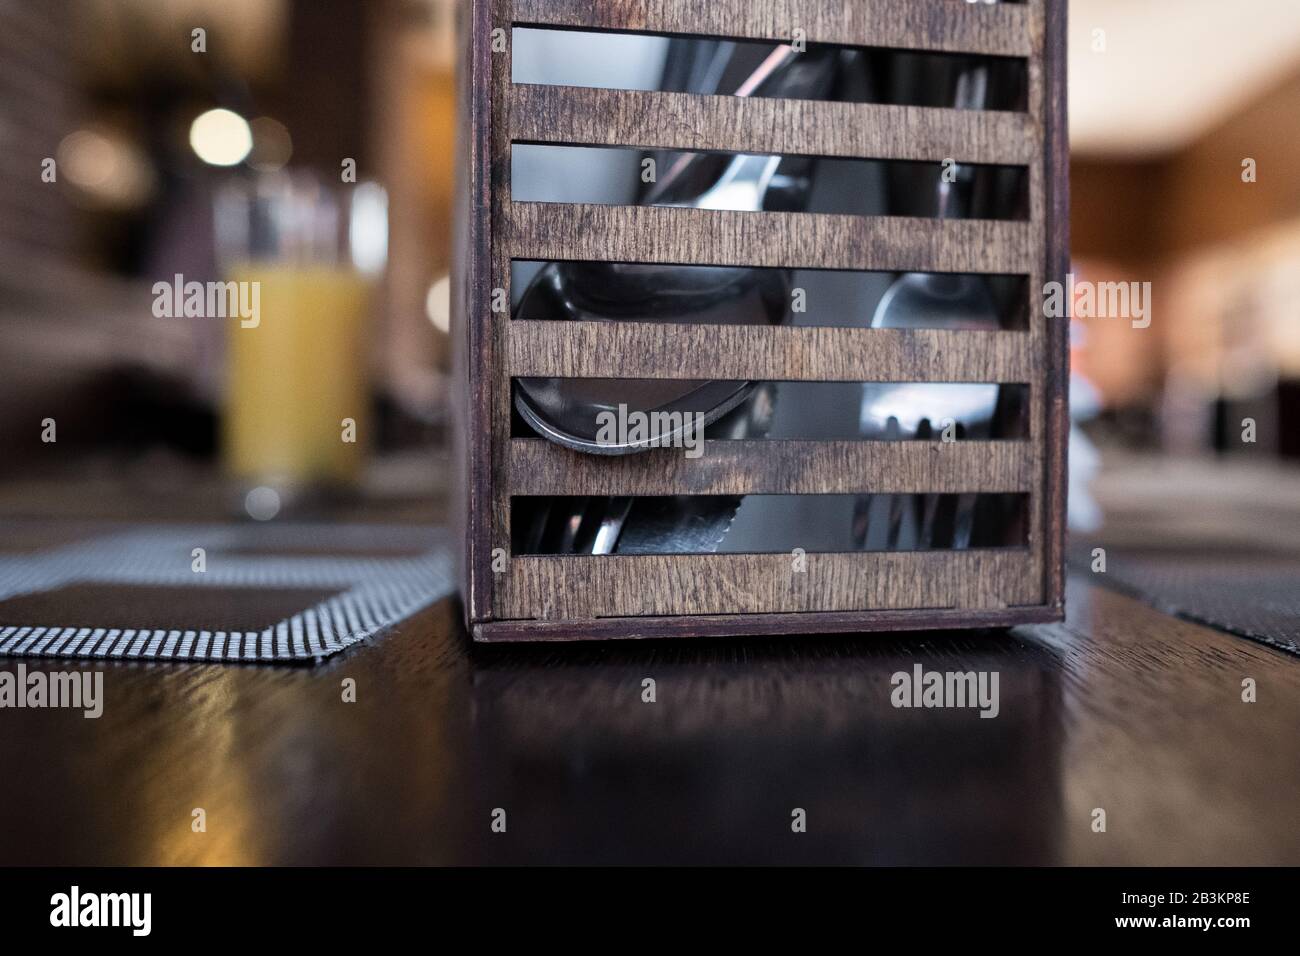 Holzbestecke stehen in einem Café. Löffel, Gabel zum Mittagessen in einem Restaurant. Brauner Hintergrund Stockfoto